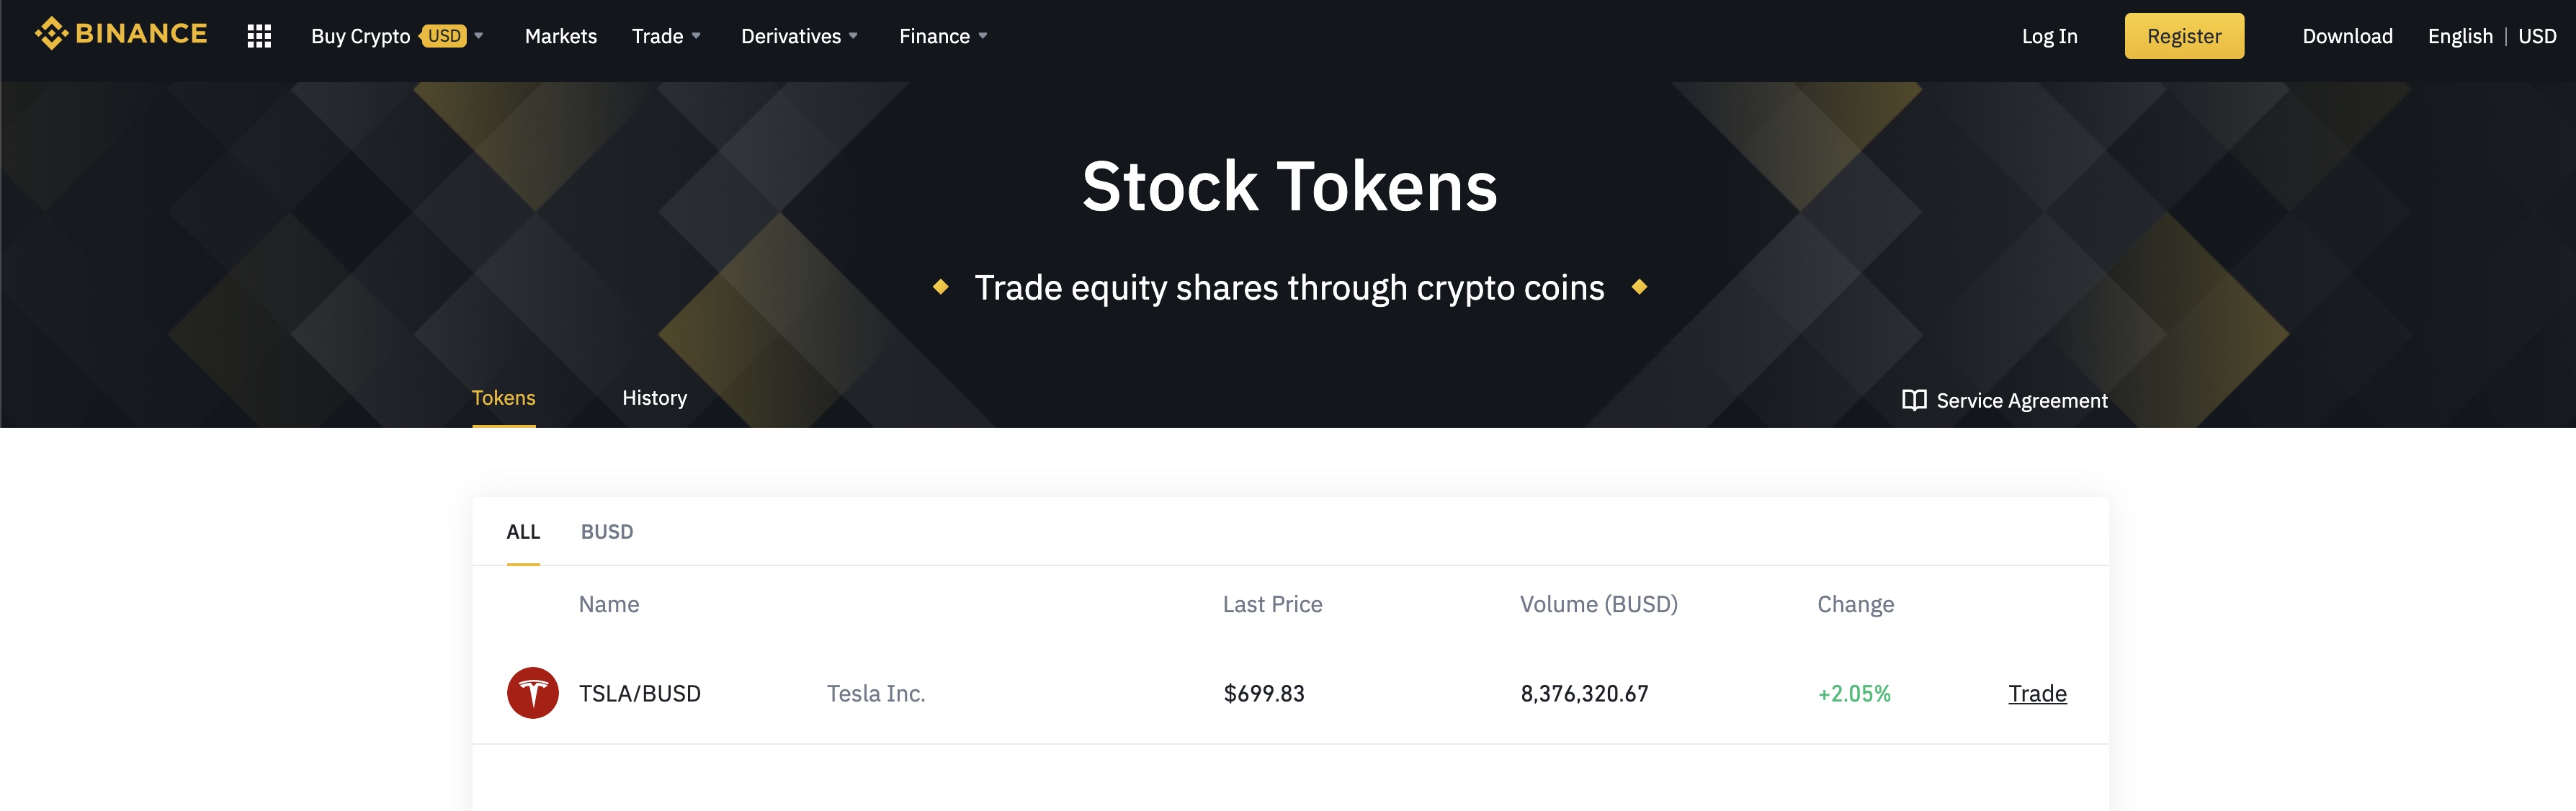 Tesla (TSLA) now has crypto stock token by Binance to buy ...